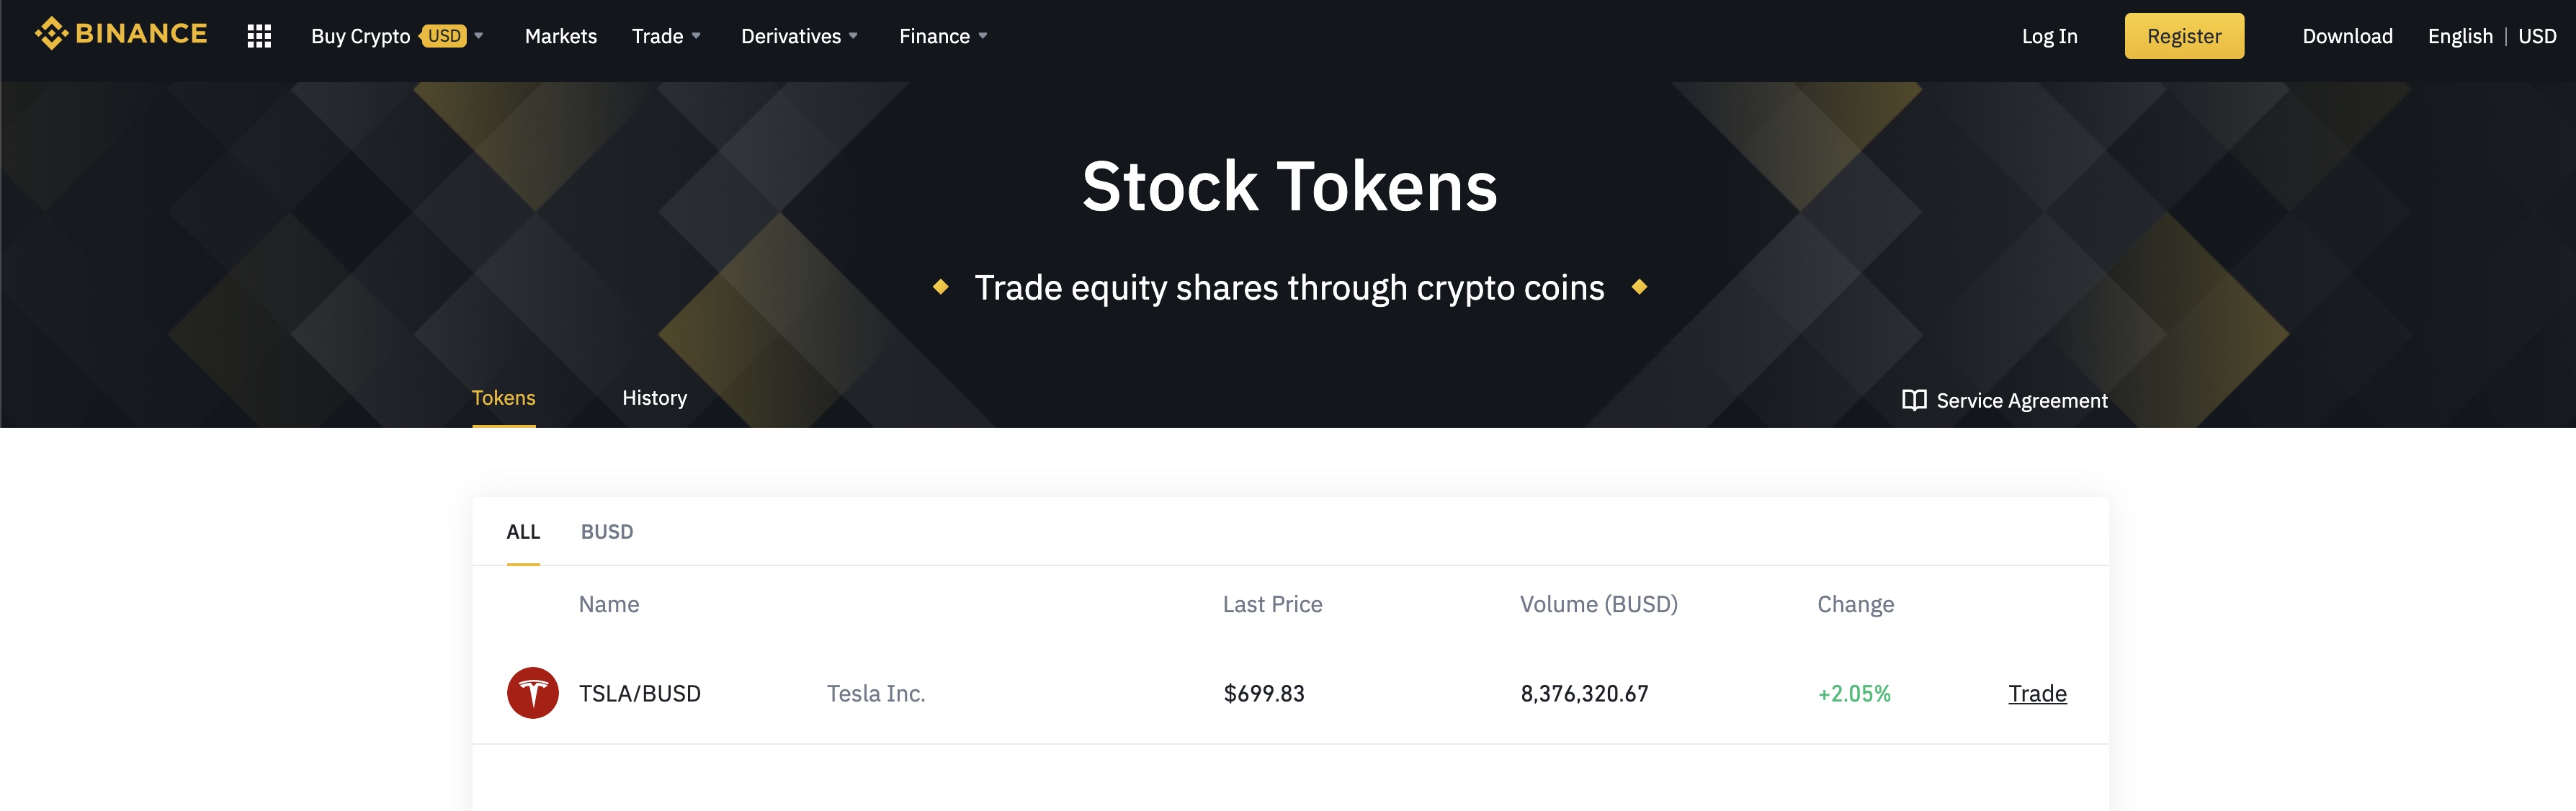 Tesla (TSLA) now has crypto stock token by Binance to buy ...